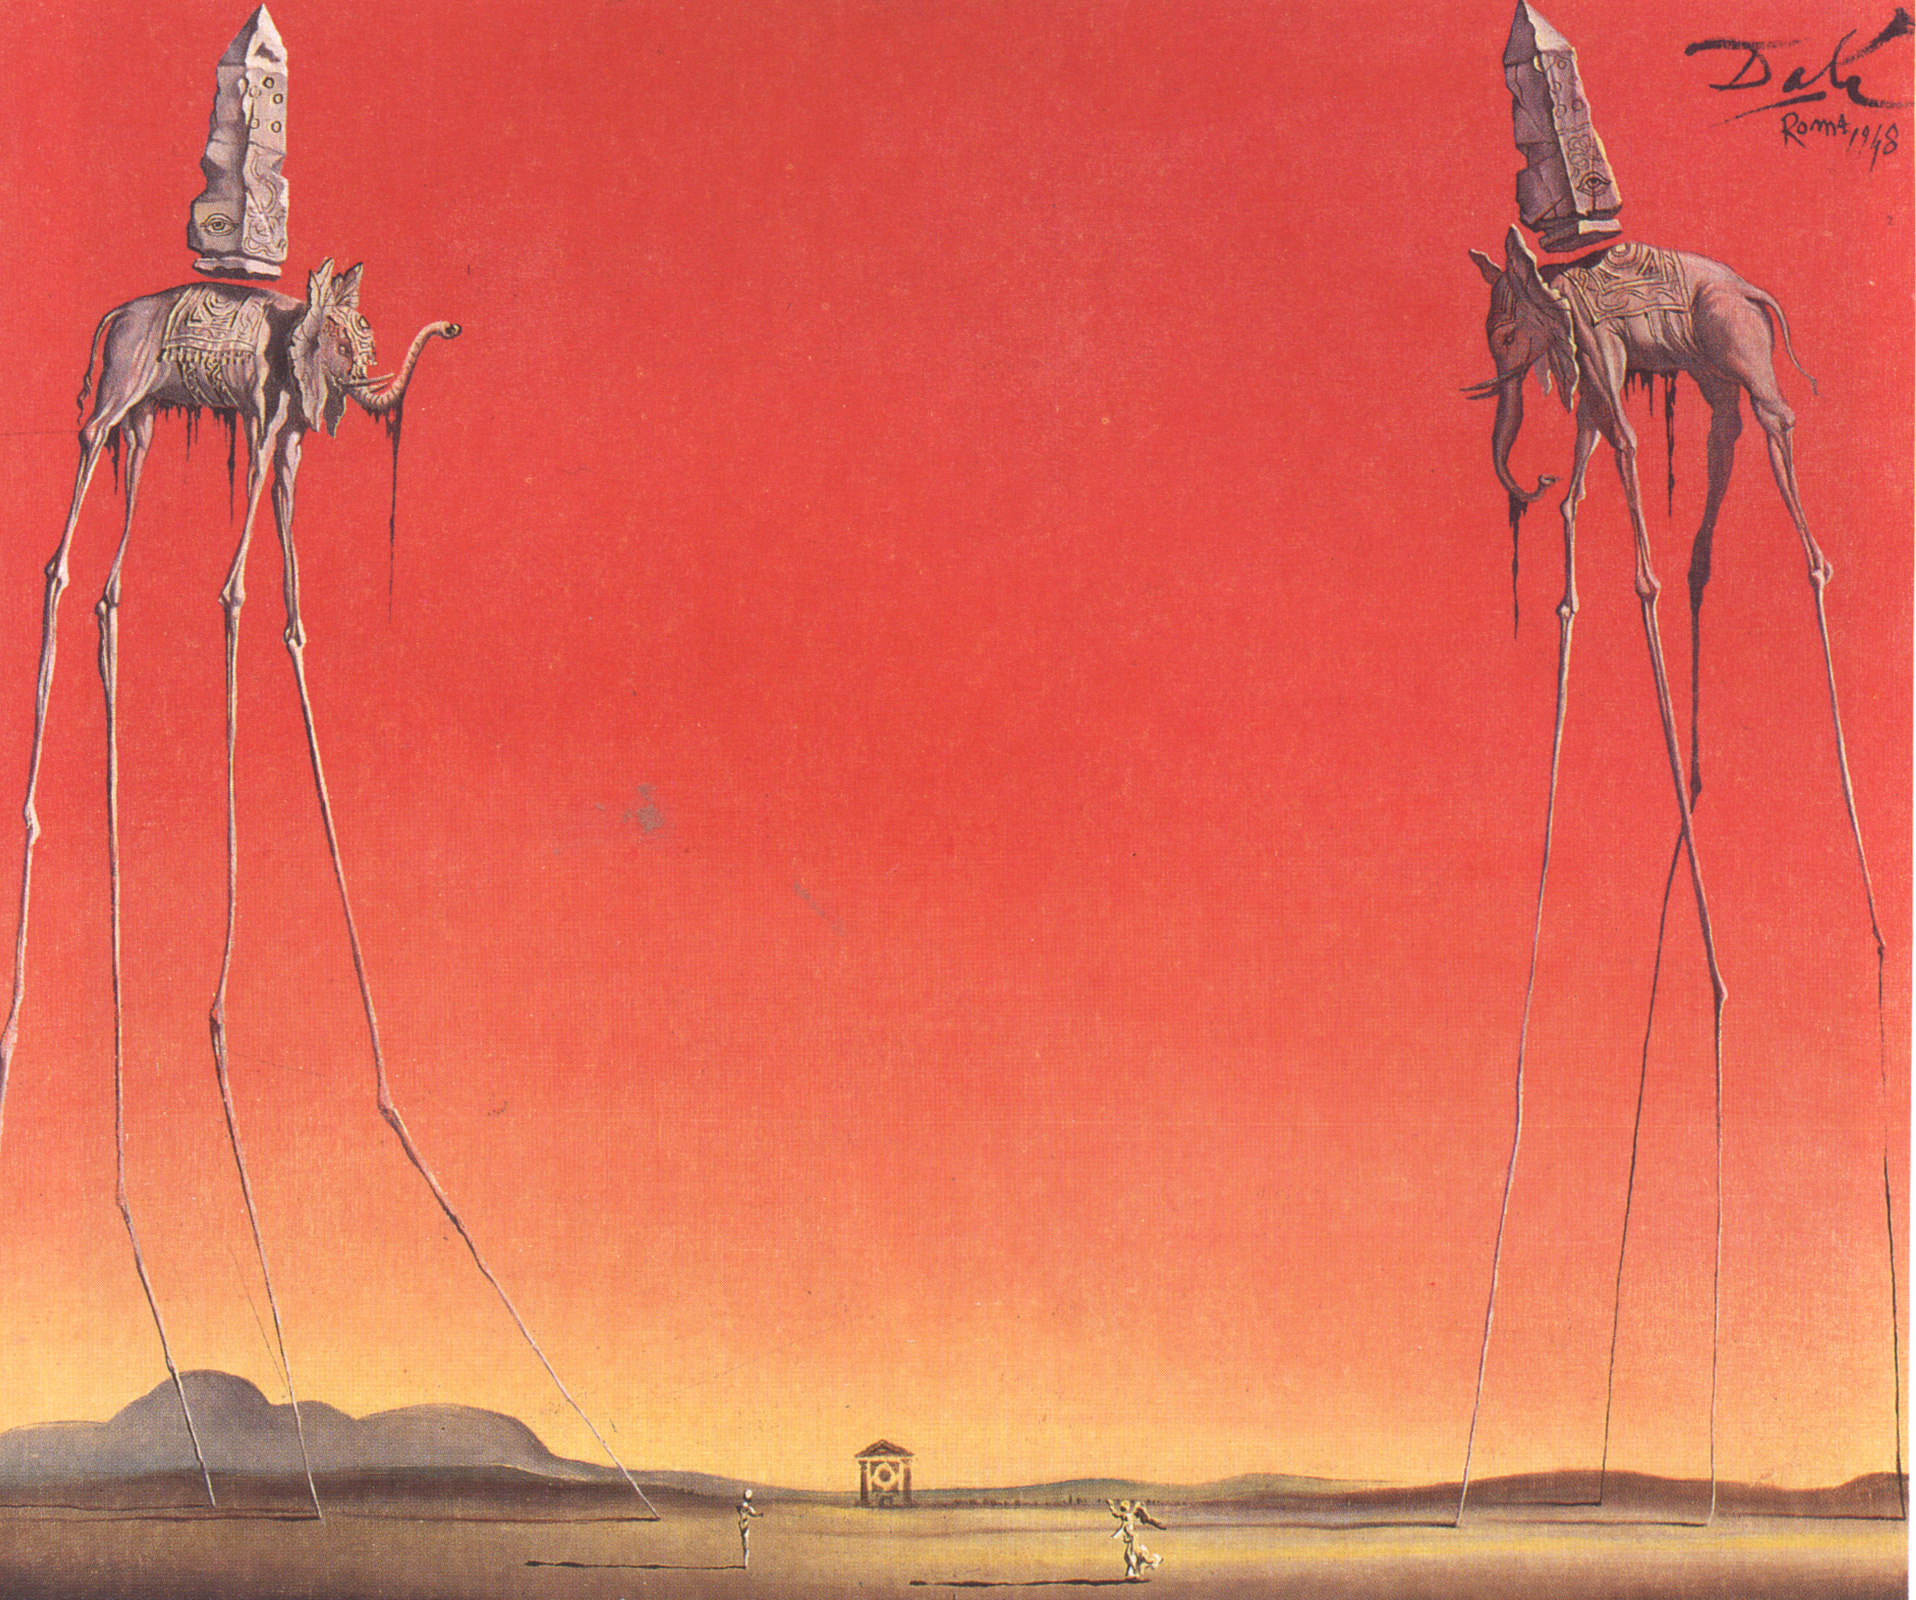 Os Elefantes by Salvador Dalí - 1948 coleção privada